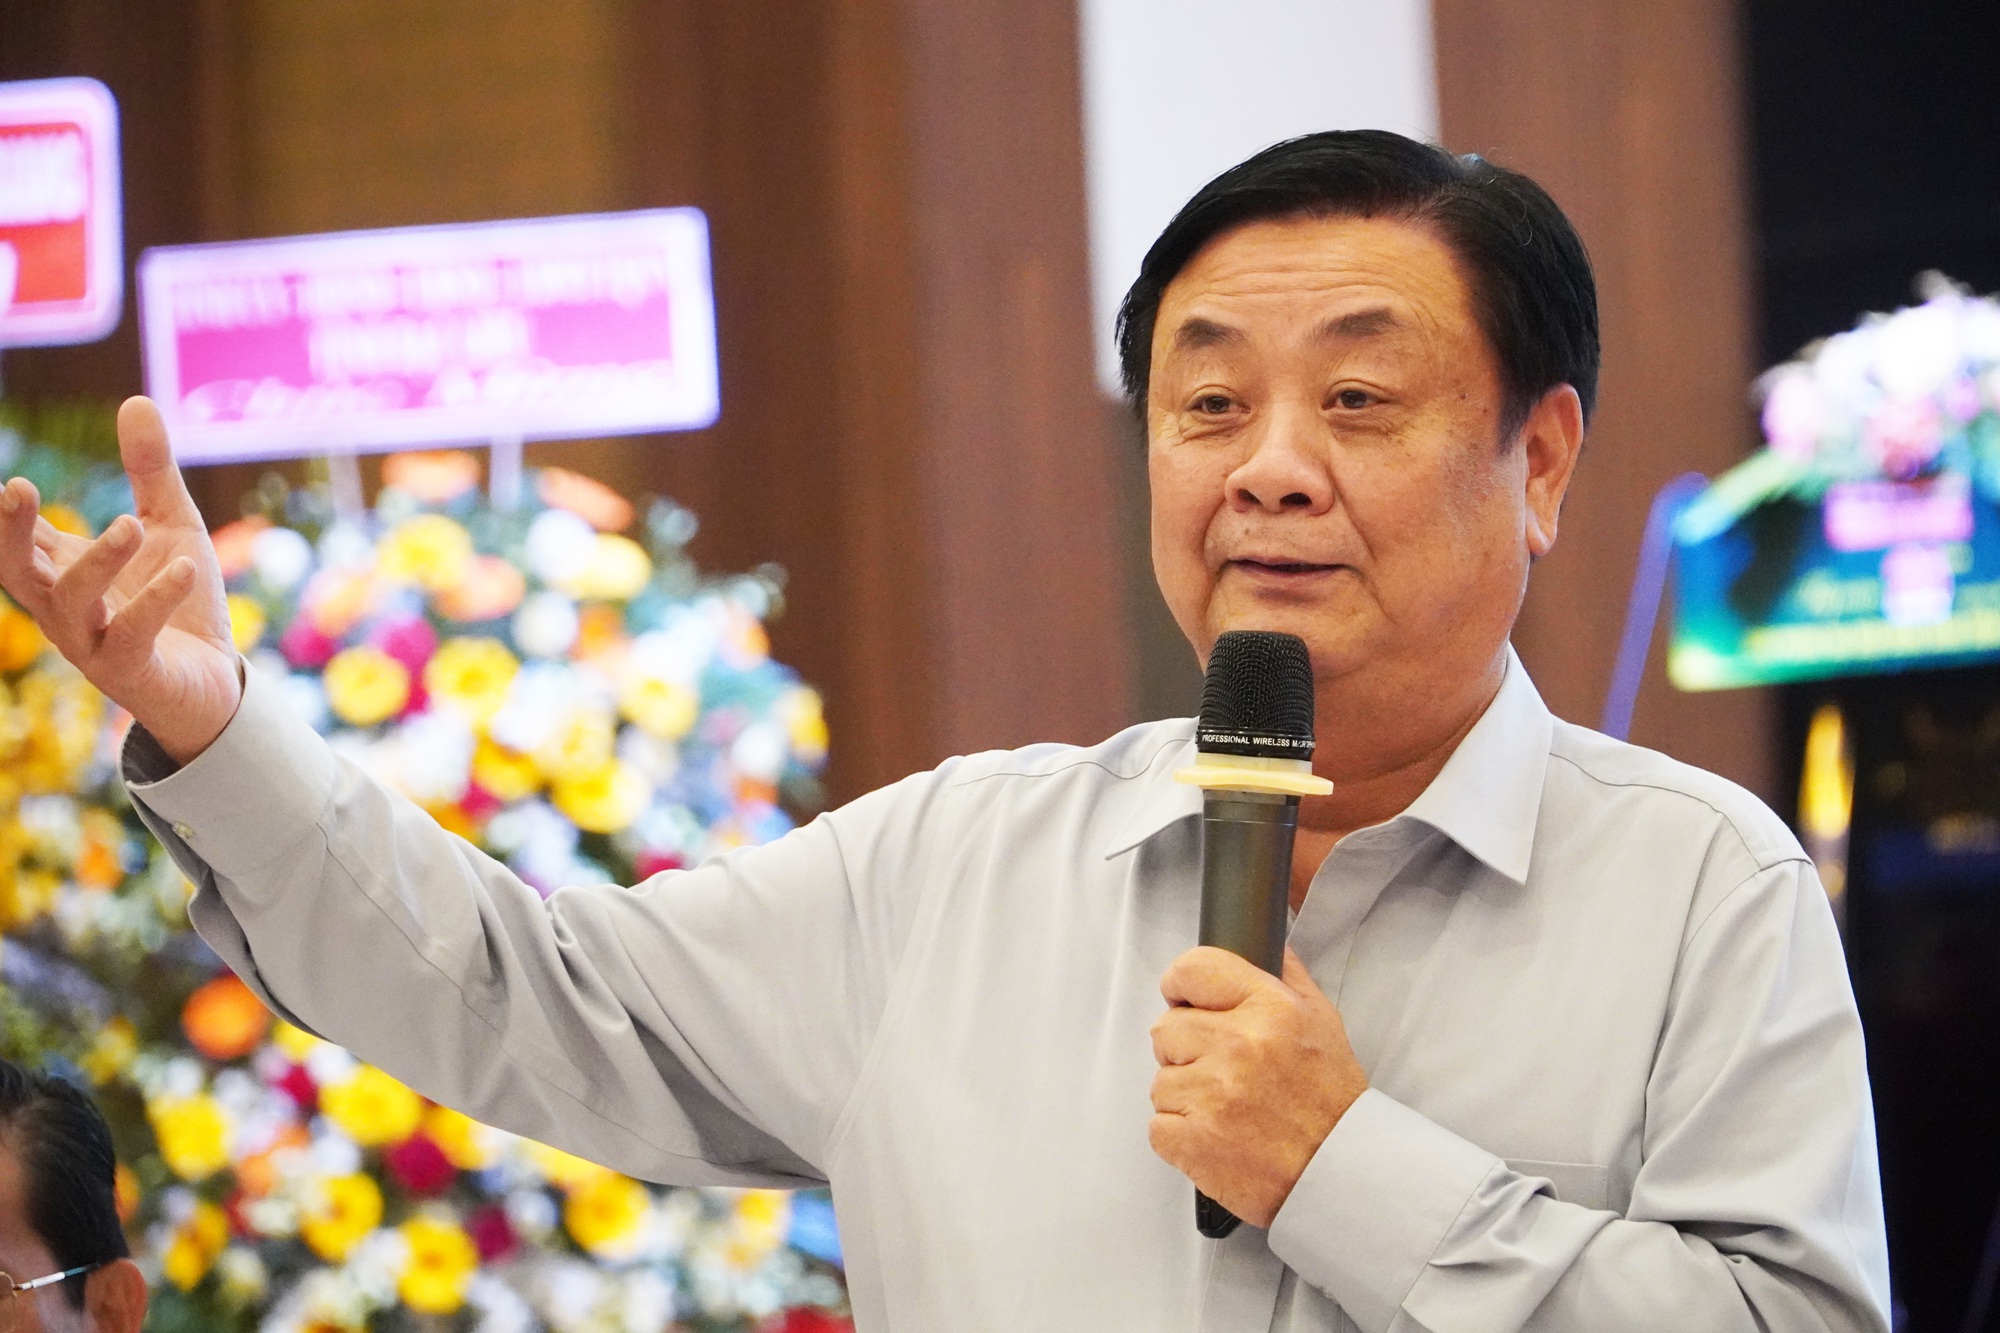 Bộ trưởng Lê Minh Hoan: Nông dân tư duy mùa vụ, doanh nghiệp tư duy thương vụ, chính quyền thì tư duy nhiệm kỳ - Ảnh 1.